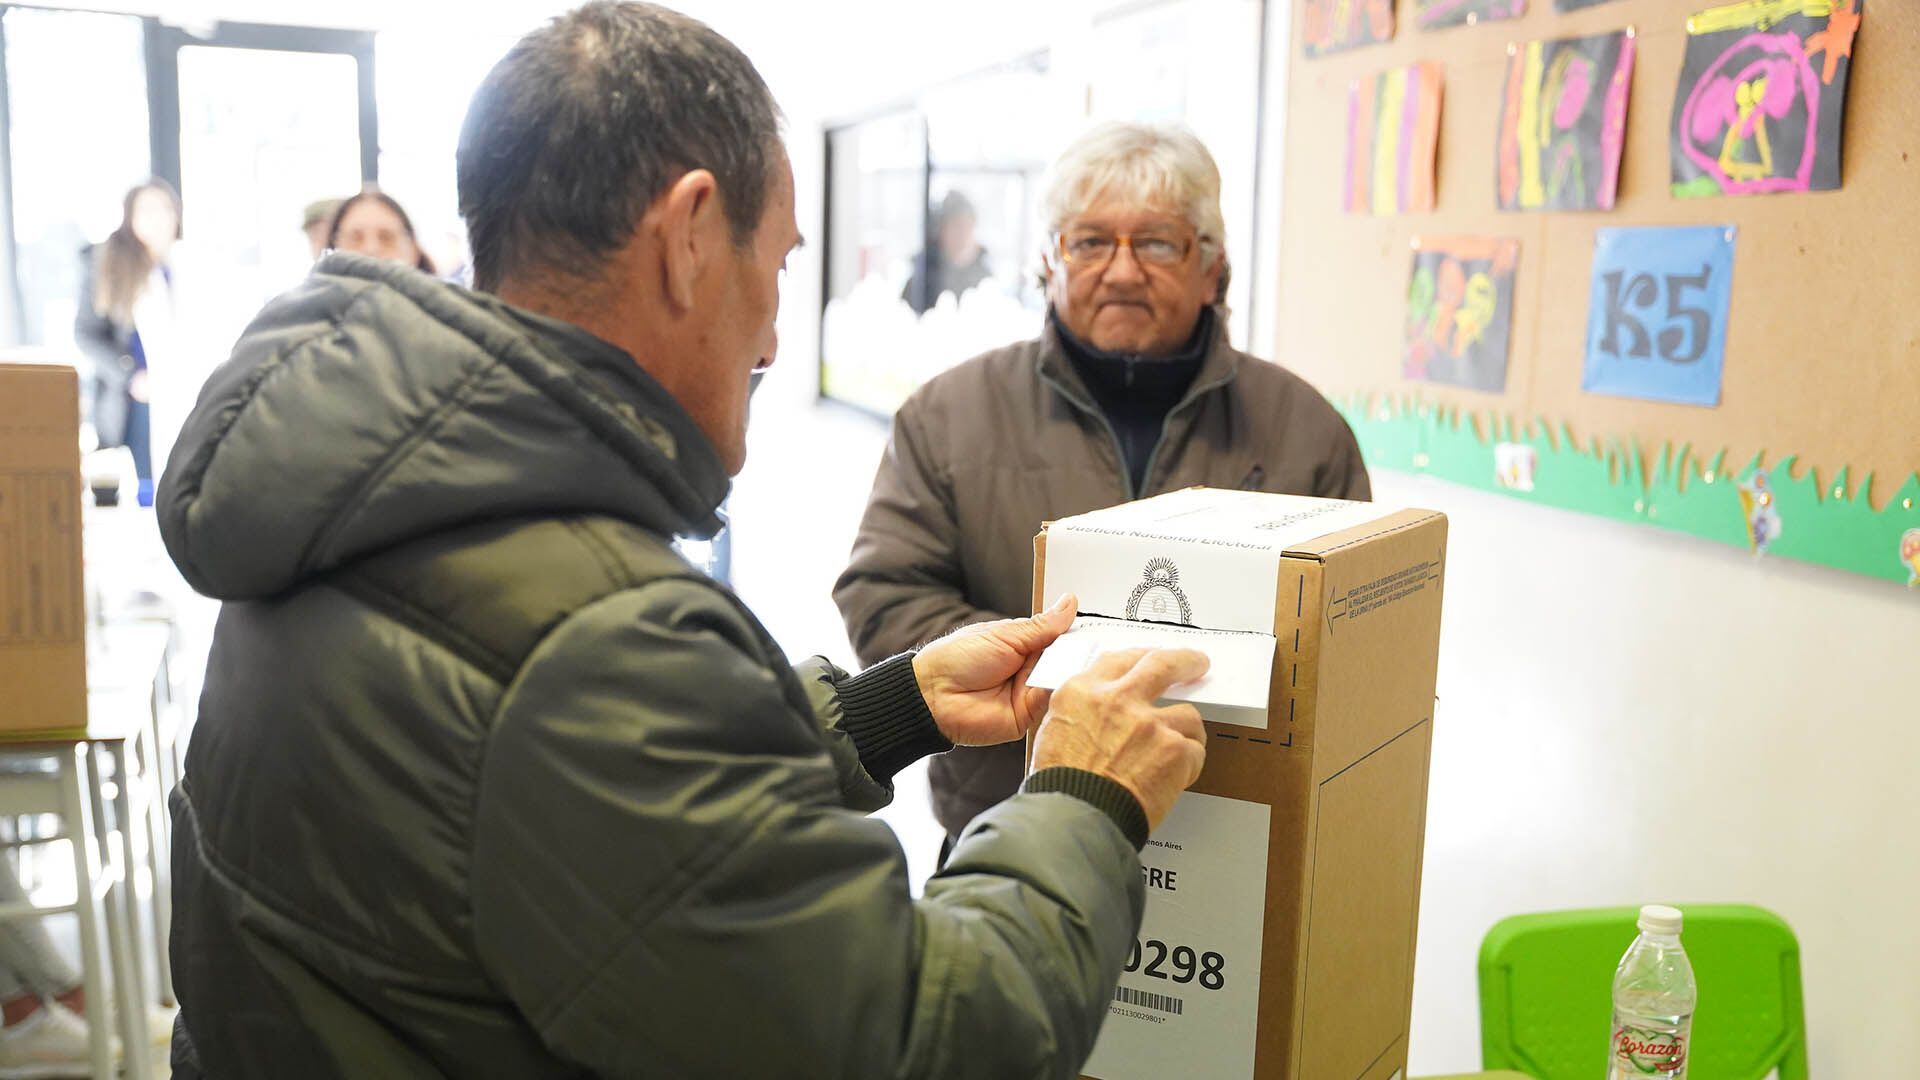 LAS PASO 2023 Elecciones 2023 - COLOR genéricas gente votando urnas boletas filas escuela